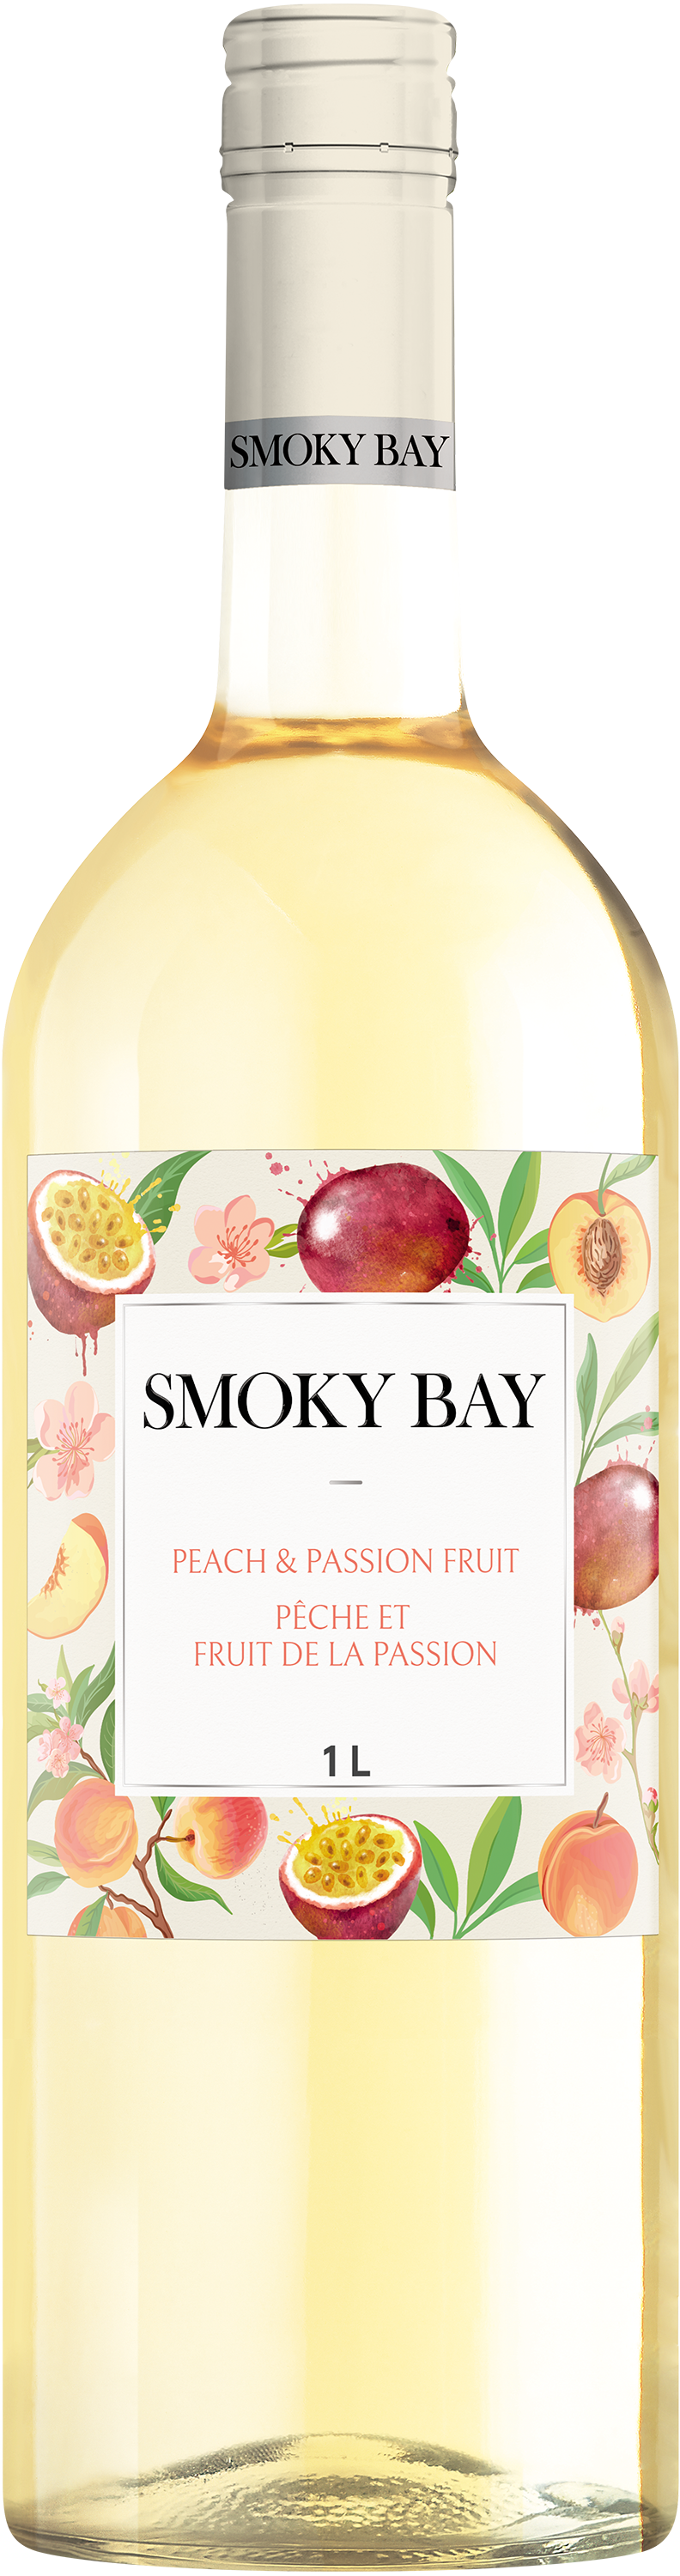 Smoky Bay Peach & Passion Fruit